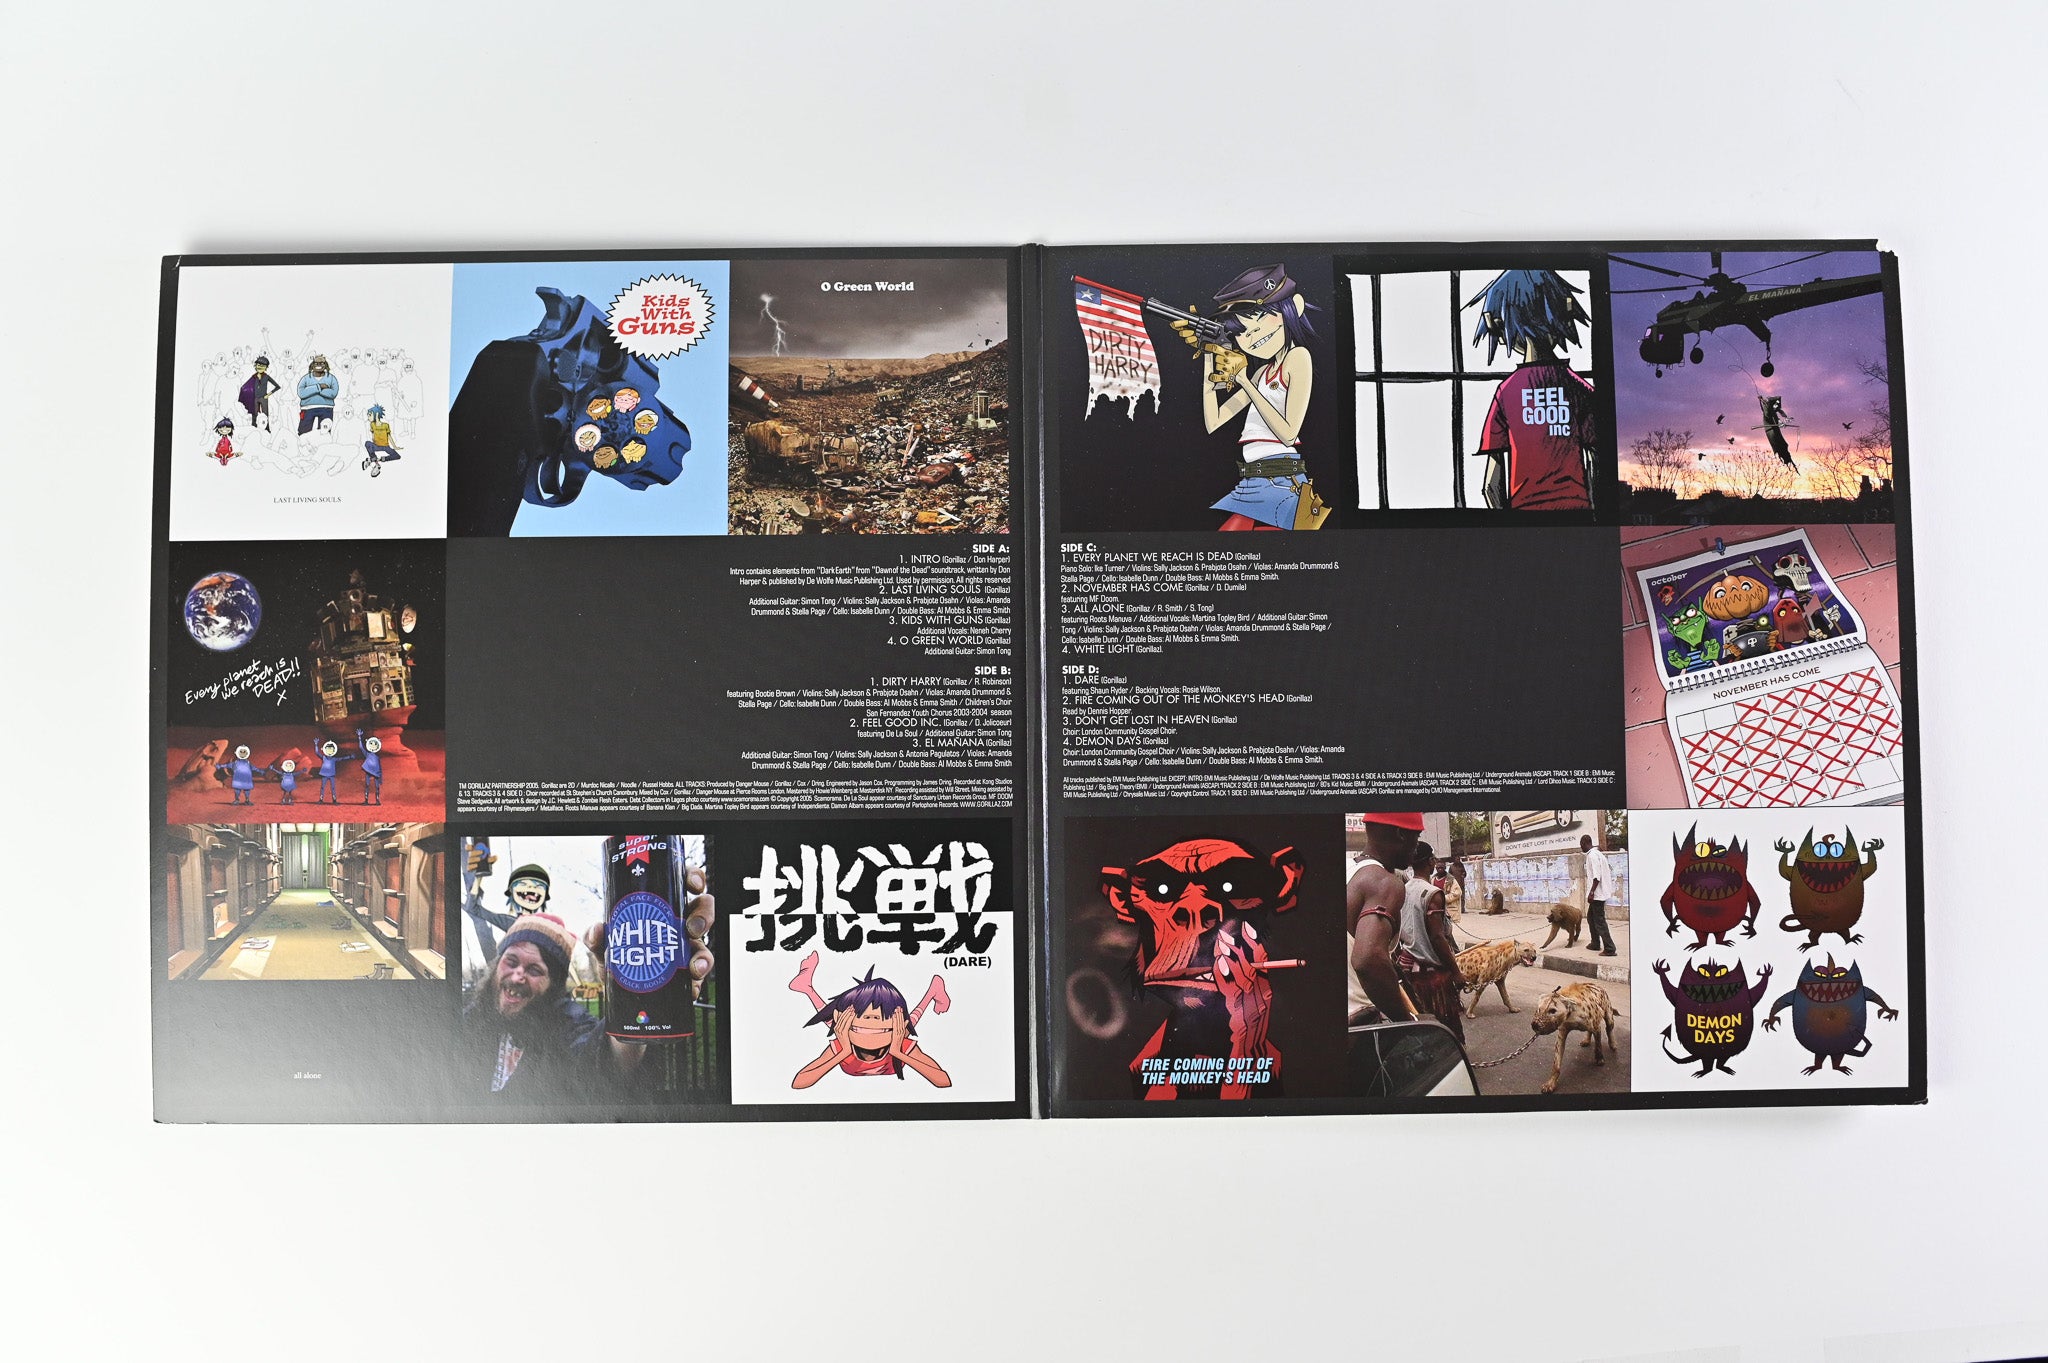 Gorillaz - Demon Days on Warner Parlophone Opaque Purple Reissue